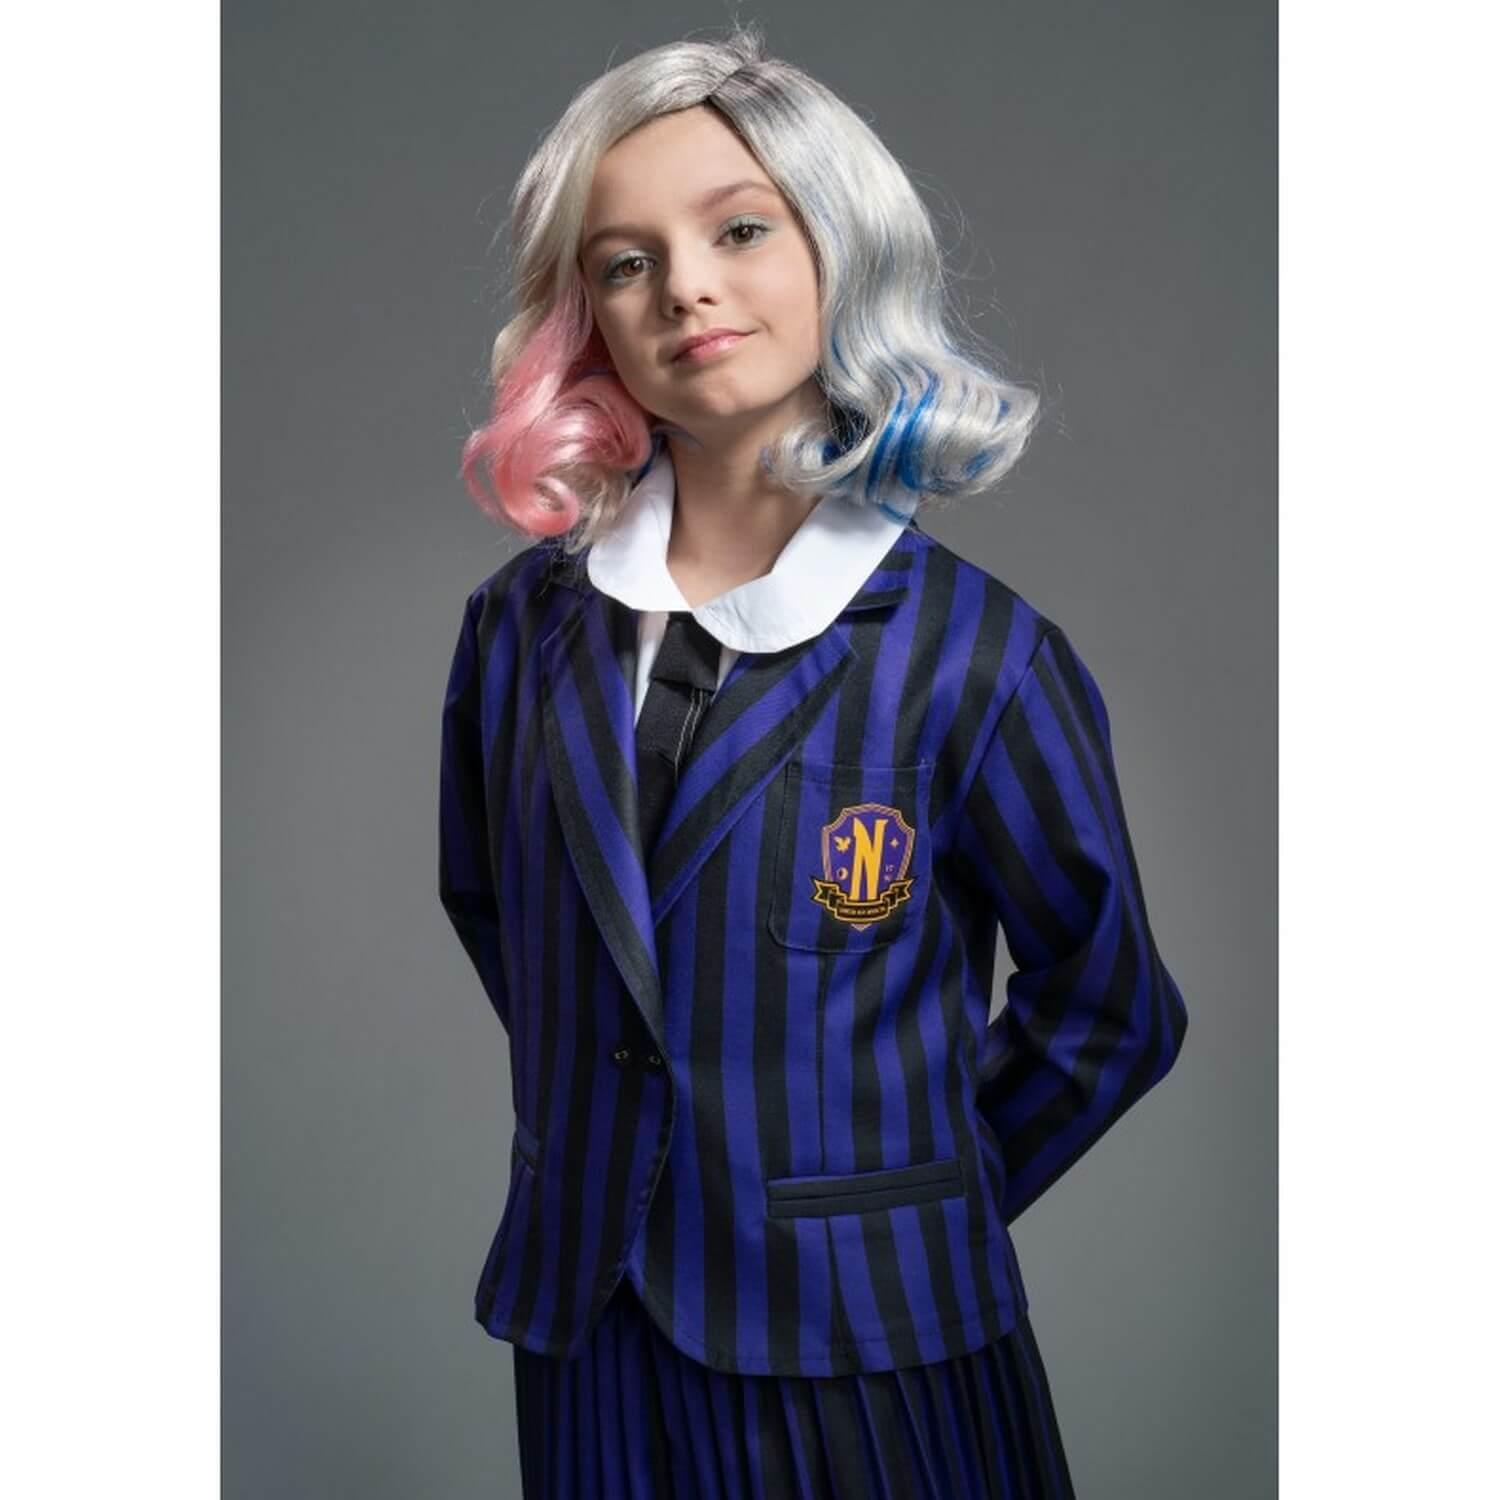 Déguisement uniforme scolaire Mercredi Addams™ enfant